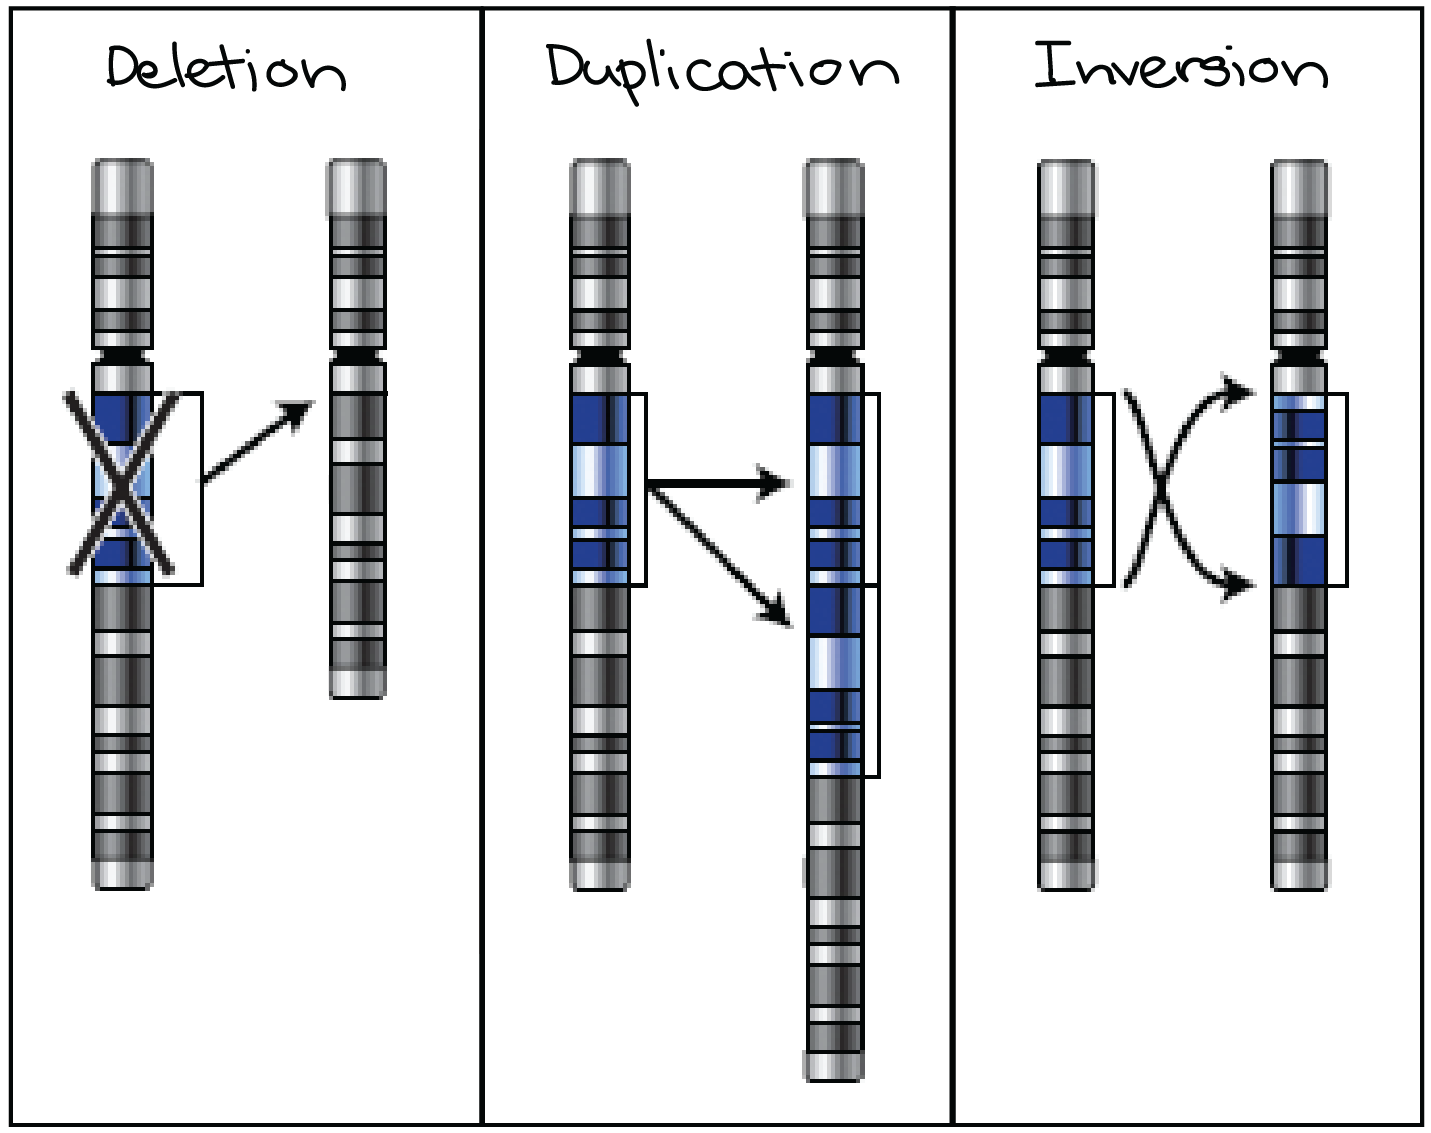 Diagrama representando esquematicamente a deleção, a duplicação e a inversão.

Deleção: uma região do cromossomo original é removida, levando a um cromossomo mais curto em que falta uma seção.

Duplicação: uma região do cromossomo original é duplicada, levando a um cromossomo mais longo com uma cópia a mais de uma seção em particular.

Inversão: uma região do cromossomo original se separa do restante do cromossomo e é recolocada em seu lugar original, mas na orientação oposta.